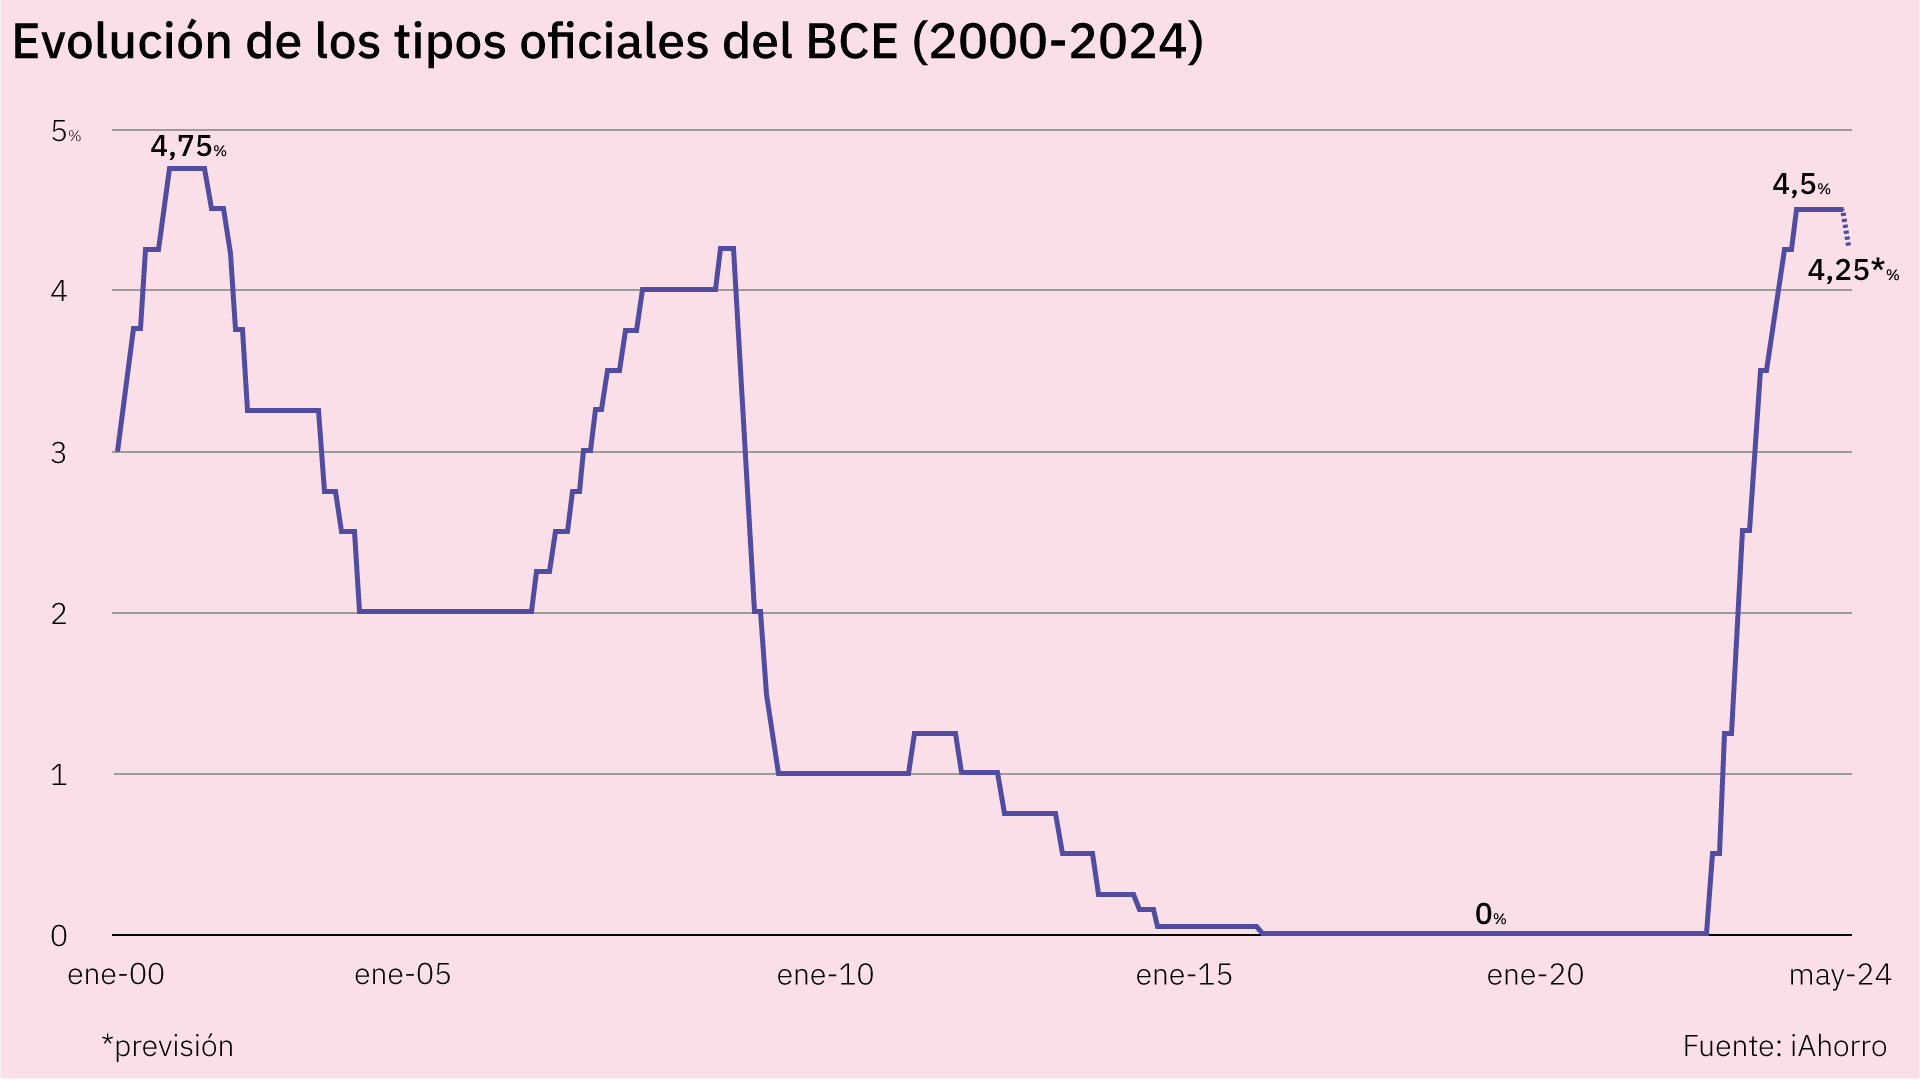 Grafico que muestra la evolución de los tipos oficiales del BCE.